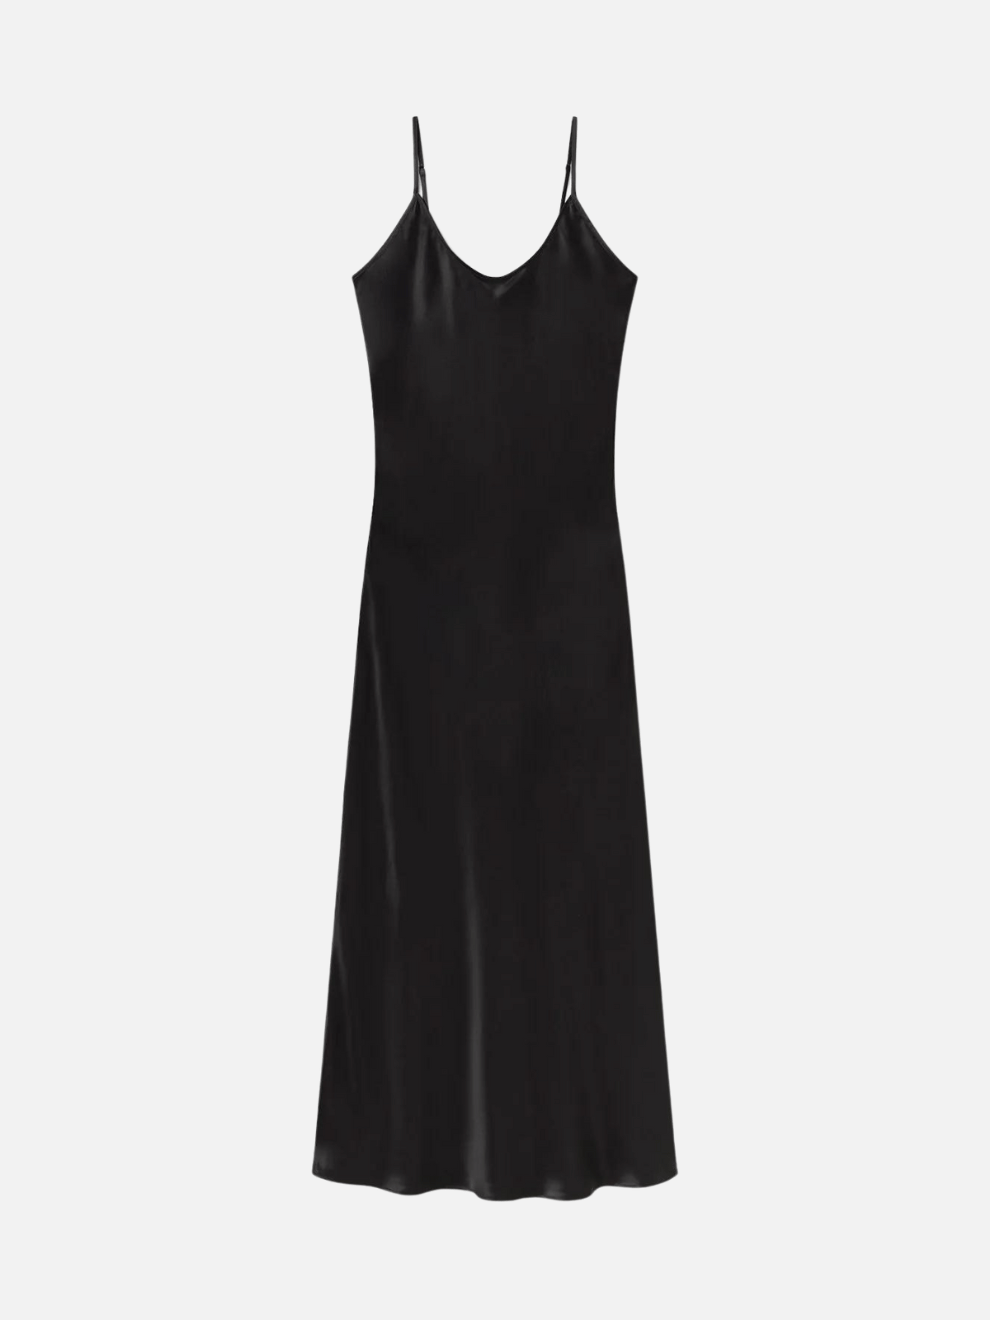 1996 Dress in Black